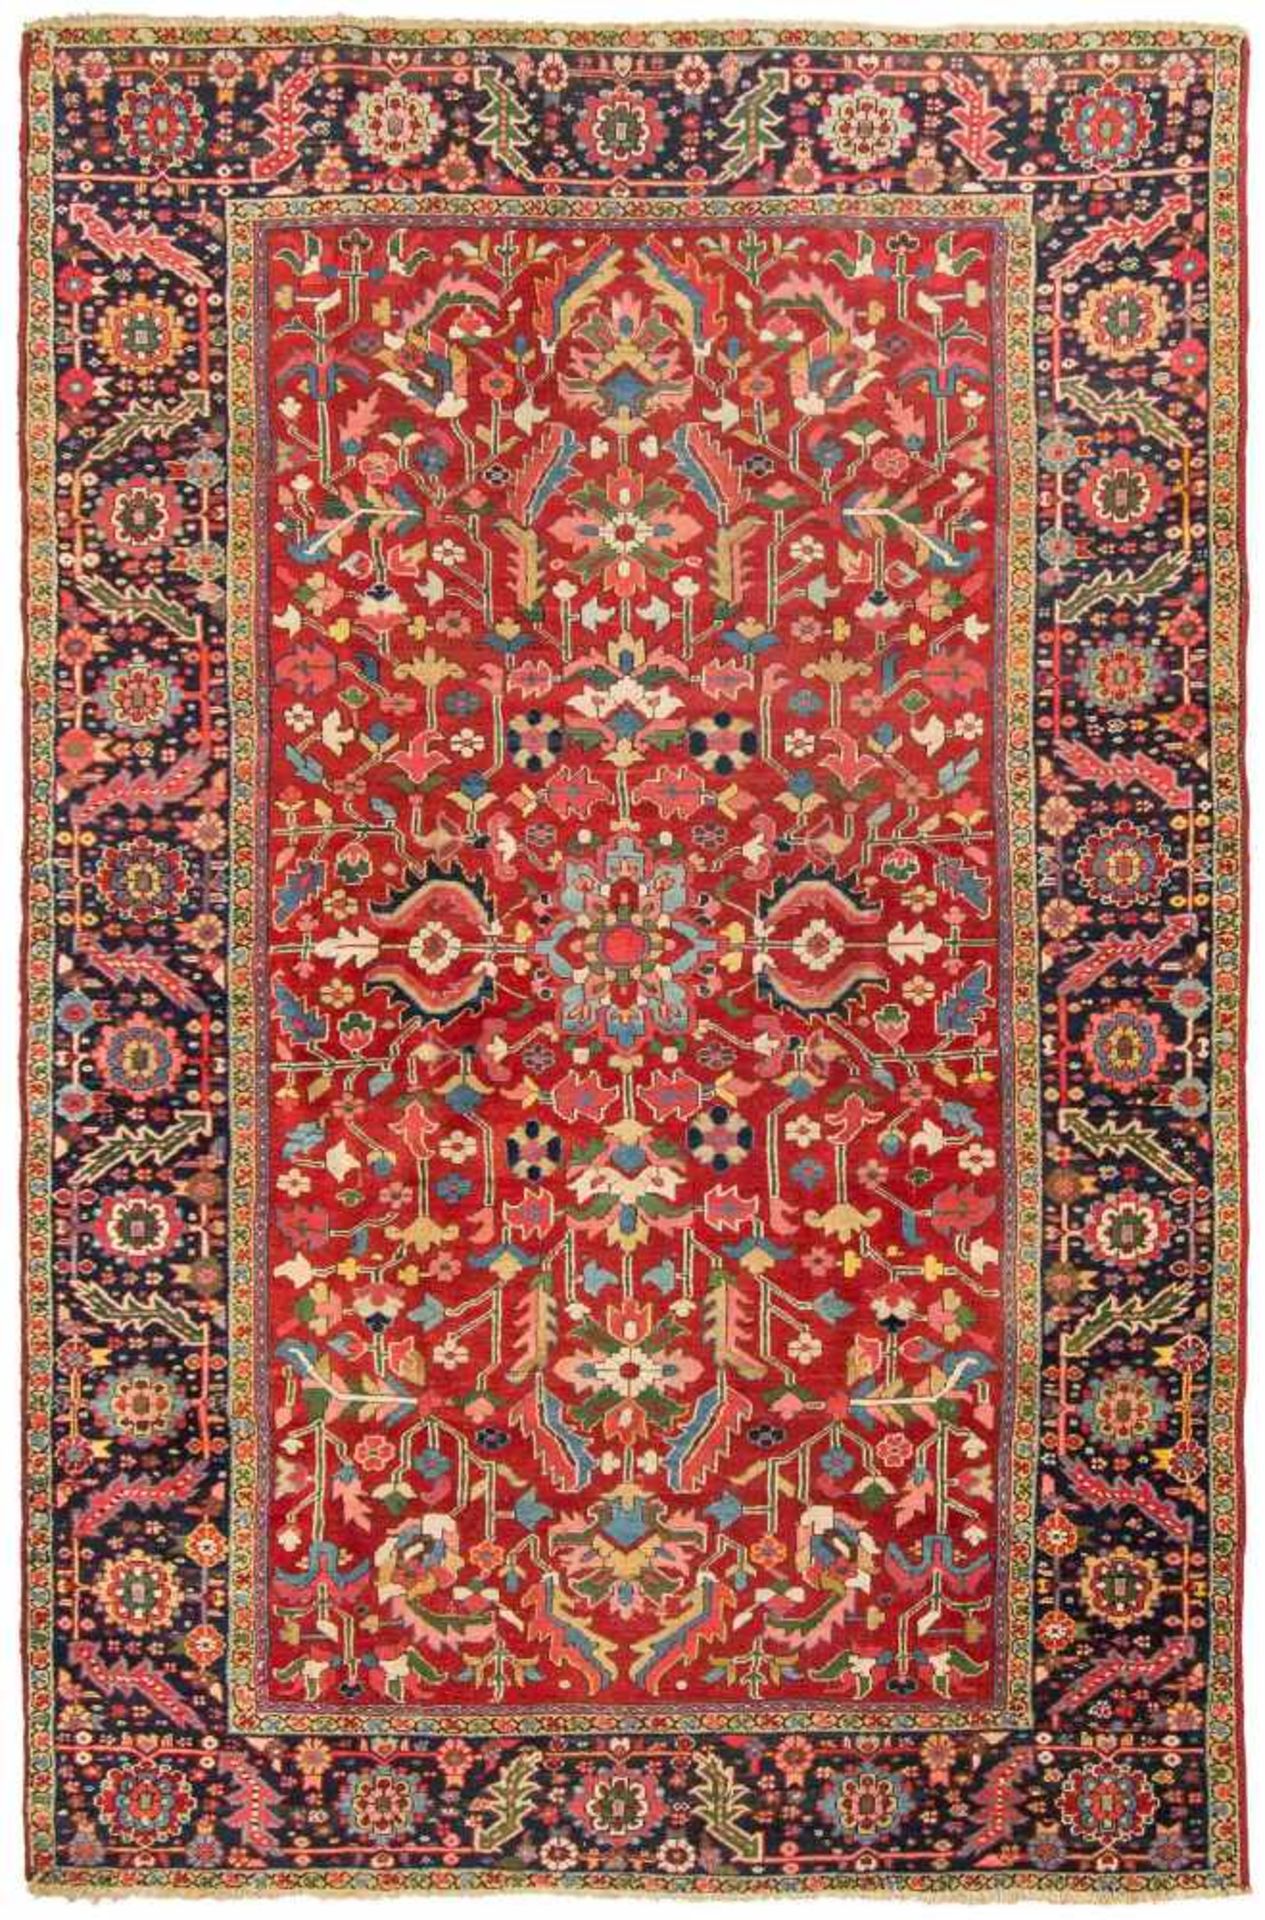 KarajaNW-Persien, um 1910. Das elegante rote Mittelfeld ist mit stark stilisierten Blüten,